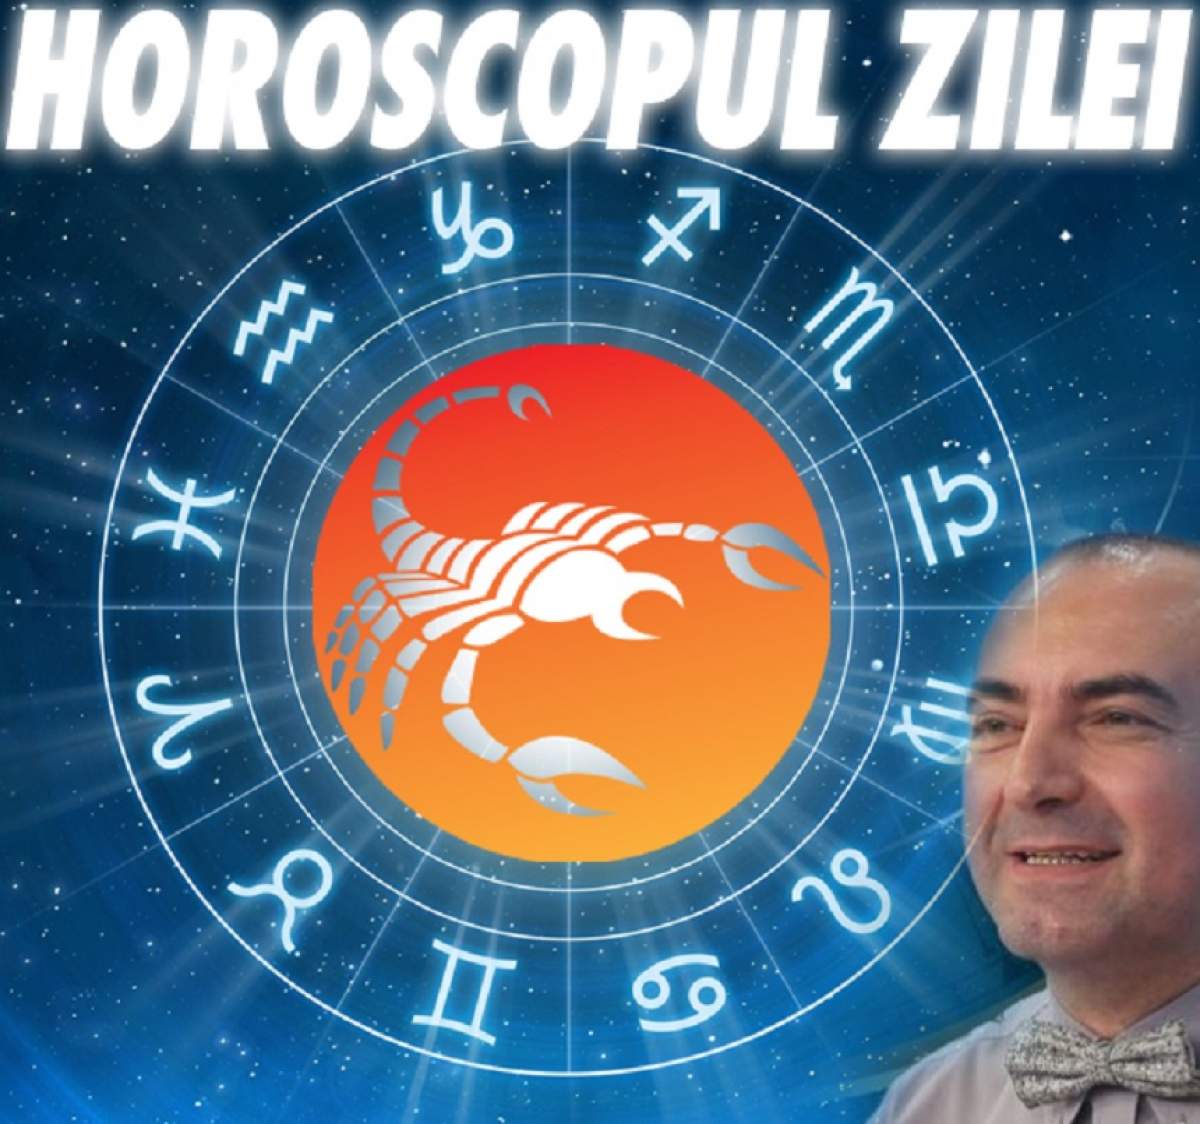 HOROSCOPUL ZILEI - 12 NOIEMBRIE: Gemenii au parte de vești bune, iar nativii Scorpion răsuflă ușurați